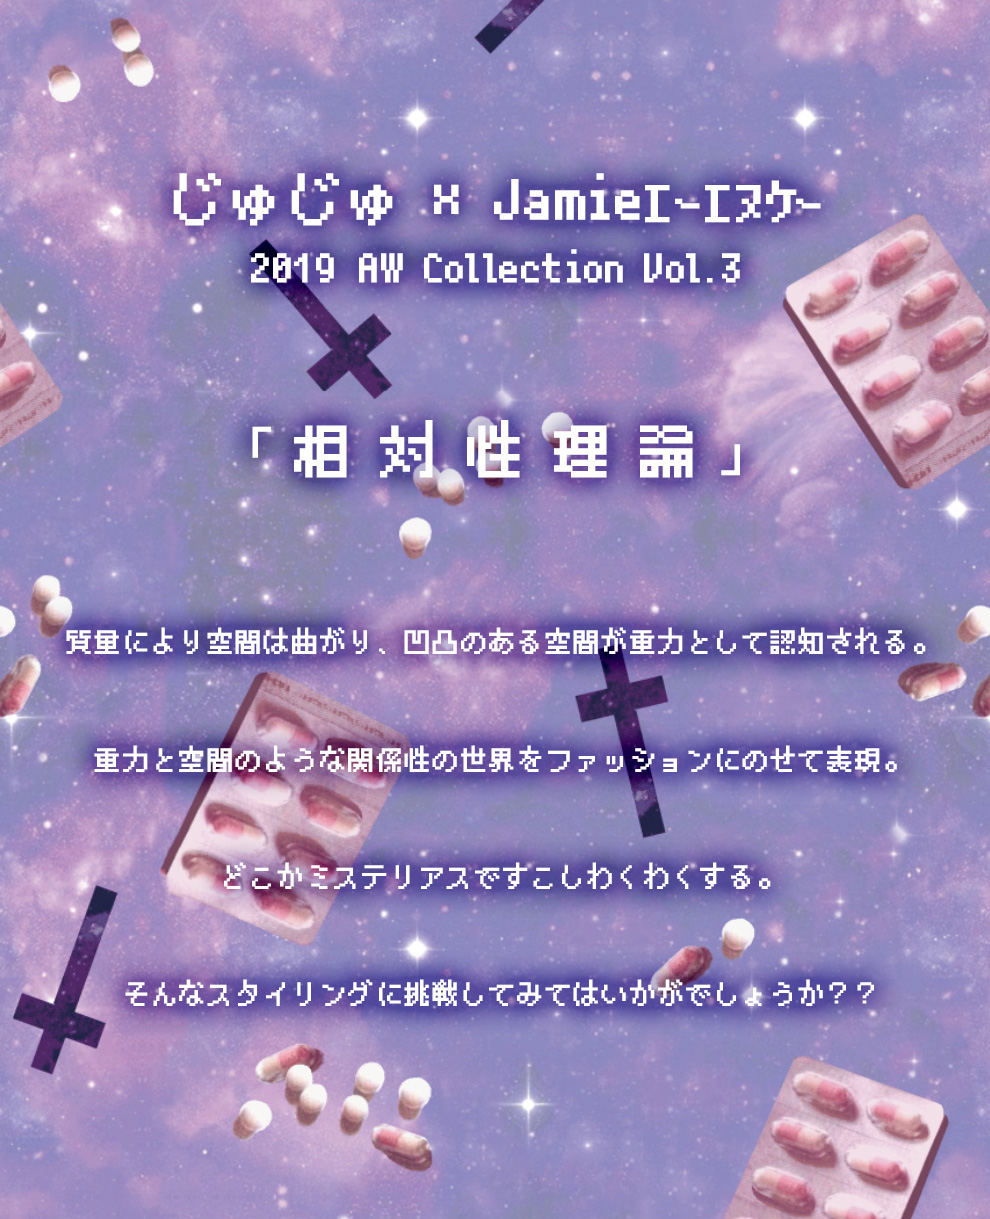 Jamieエーエヌケー 2019 Collection 相対性理論Vol.3-feat.じゅじゅ